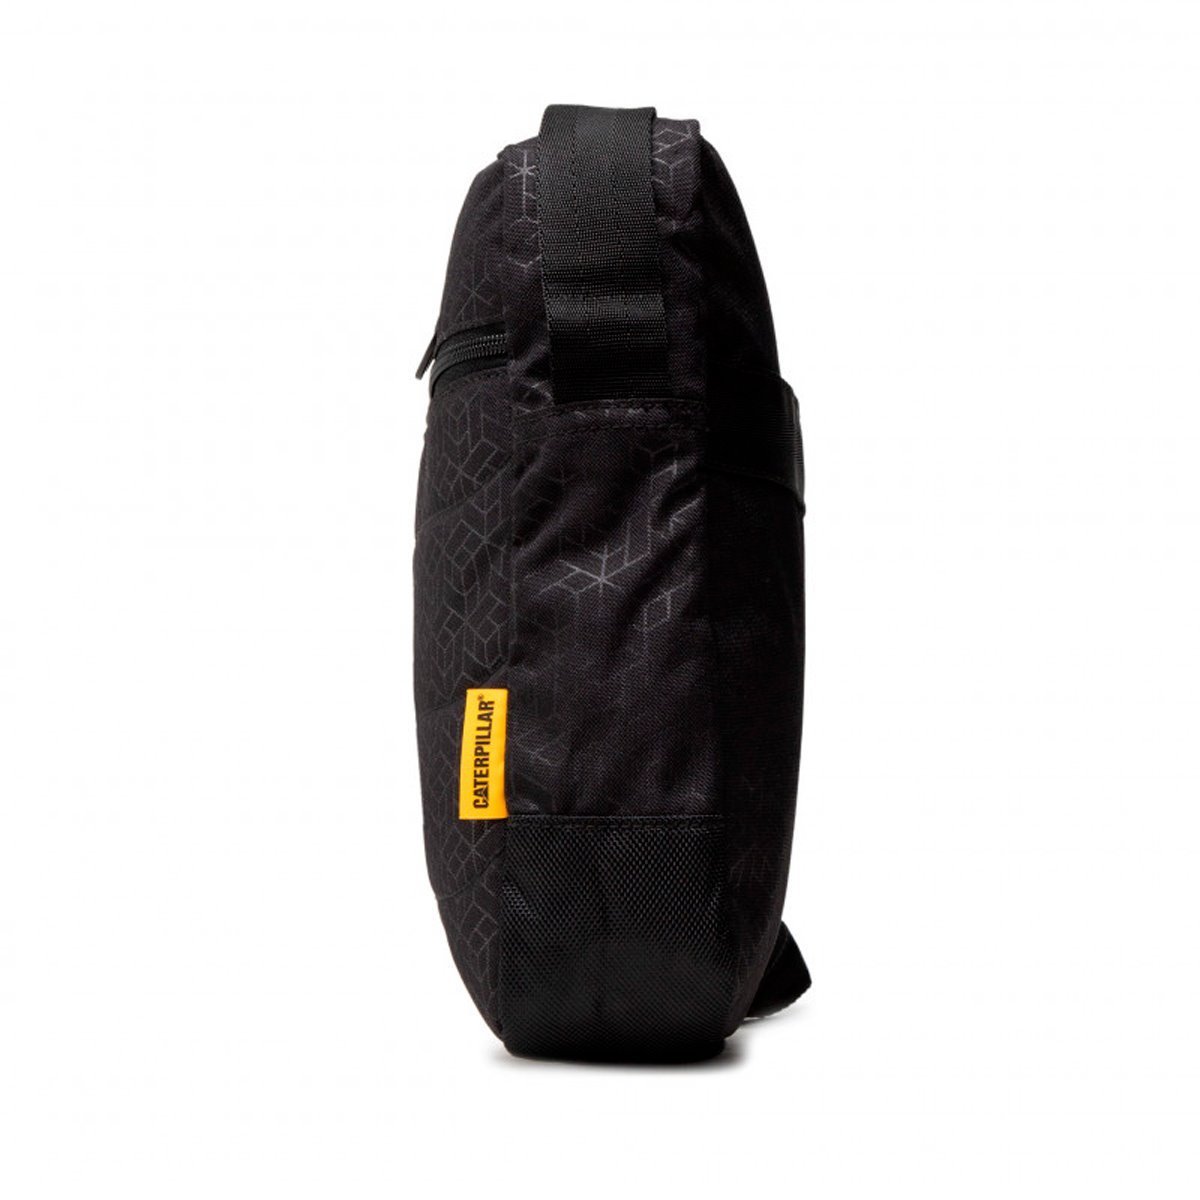 84058-478 Cat Ryan Black Heat Embossed Backpack